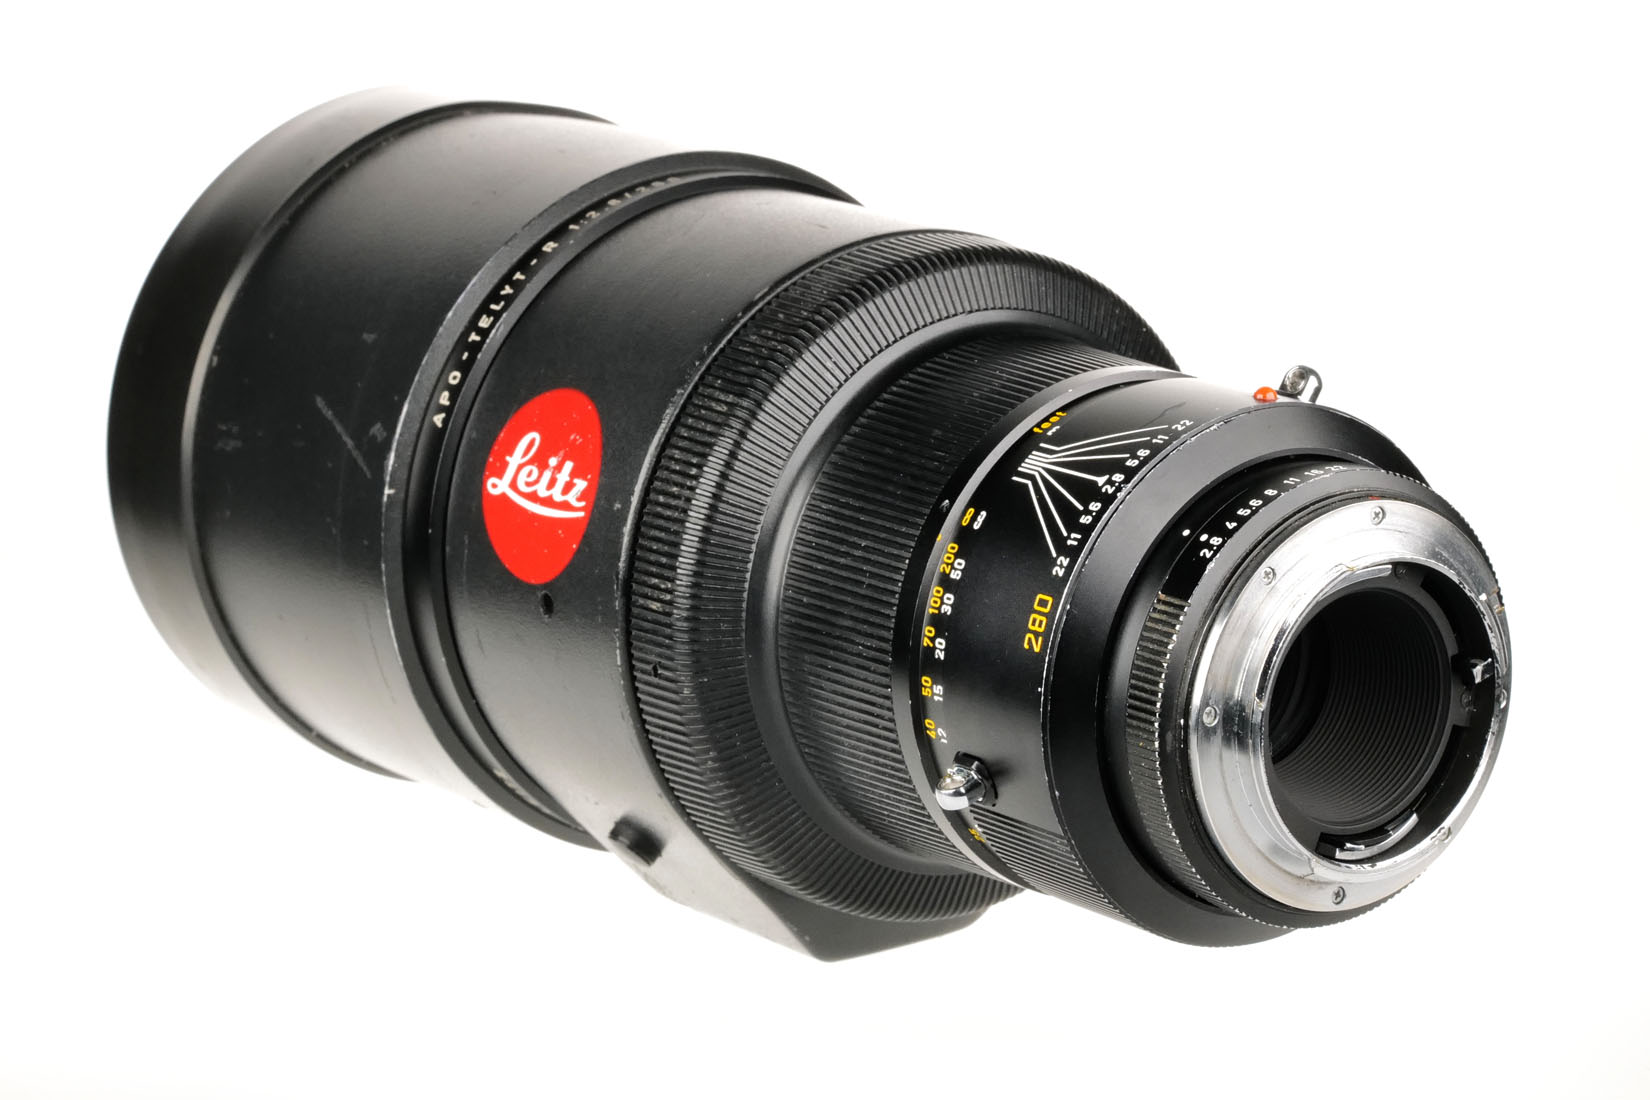 Leica Apo-Telyt-R 11245 2,8/280mm